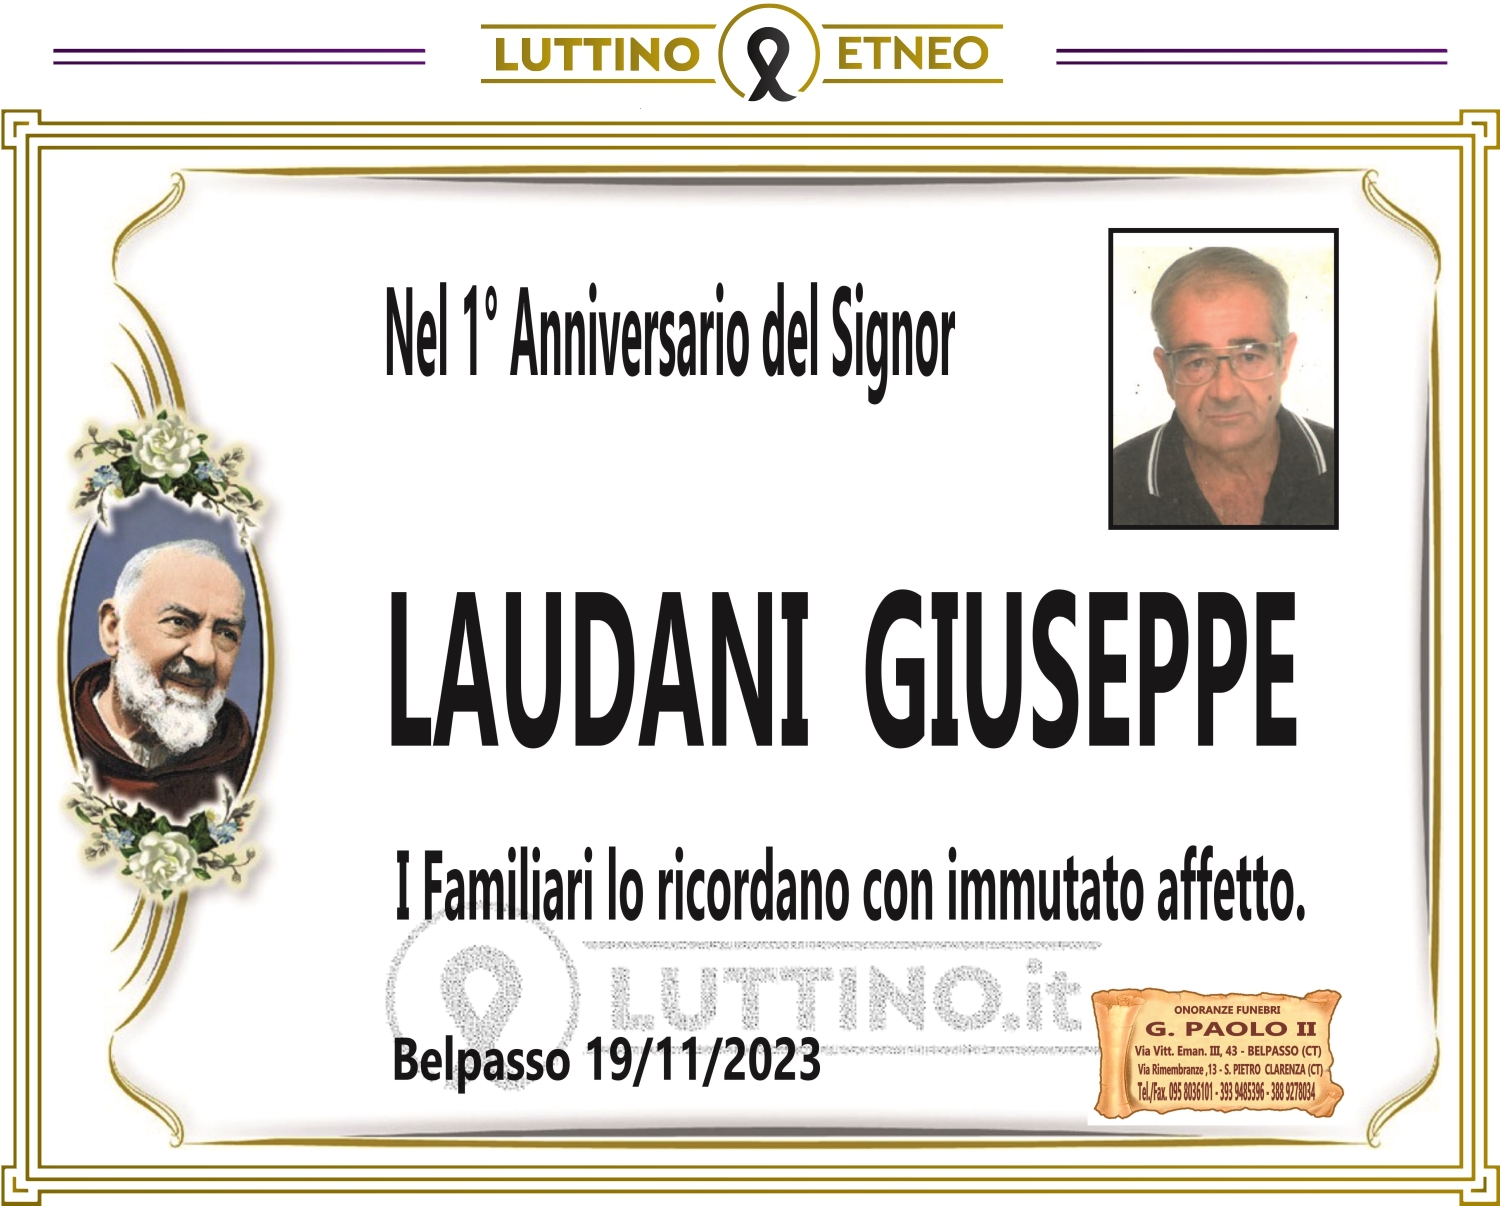 Giuseppe Laudani